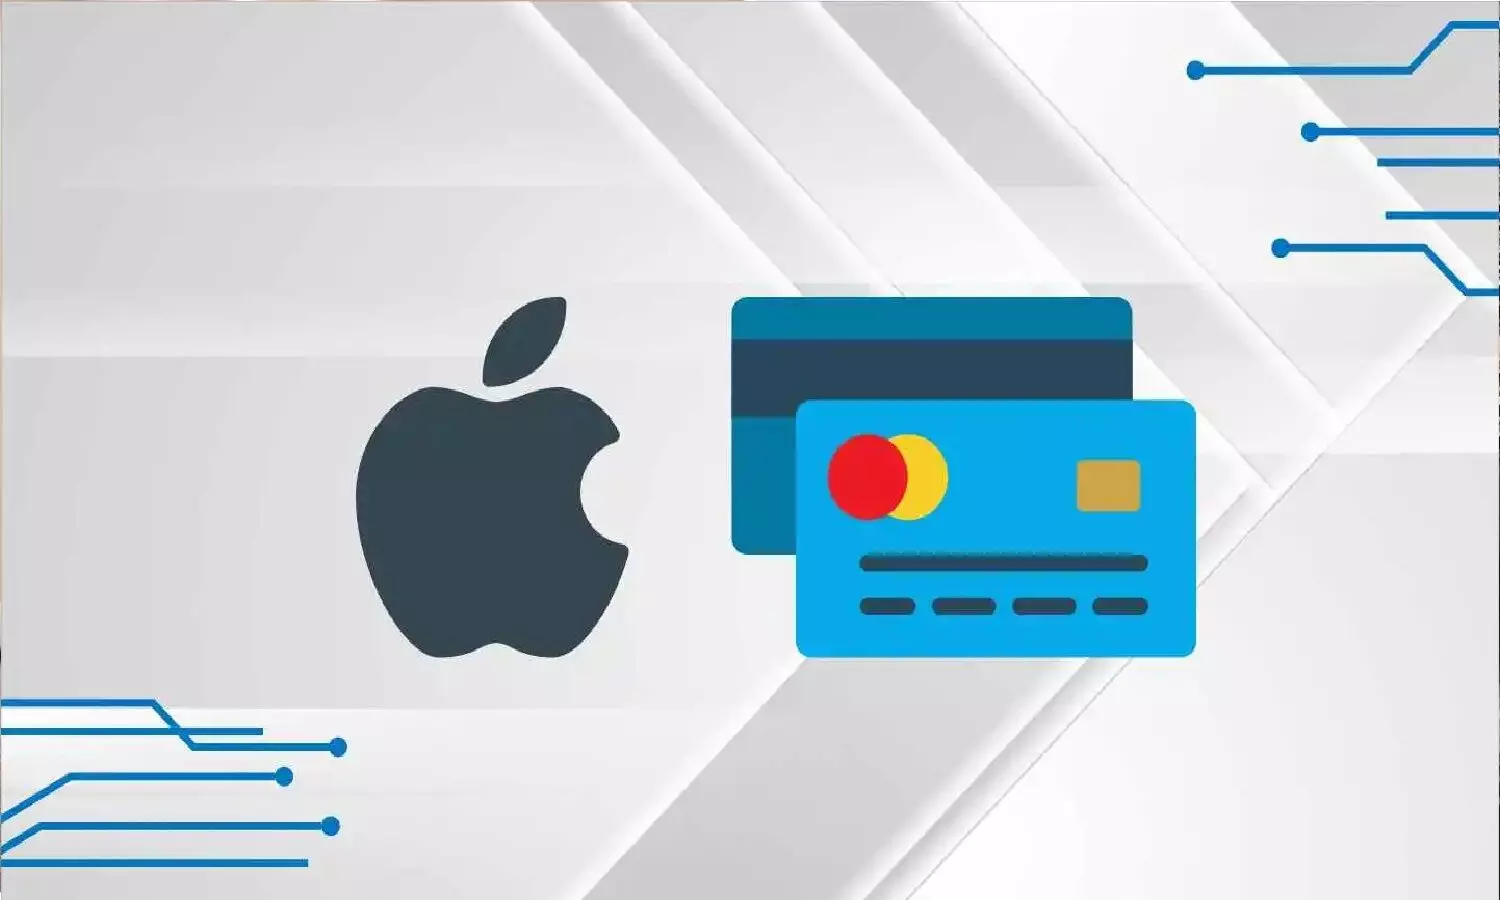 भारत में लॉन्च होगा Apple Credit Card: HDFC बैंक से पार्टनरशिप करेगी एप्पल, लेट पेमेंट फीस नहीं लगेगी